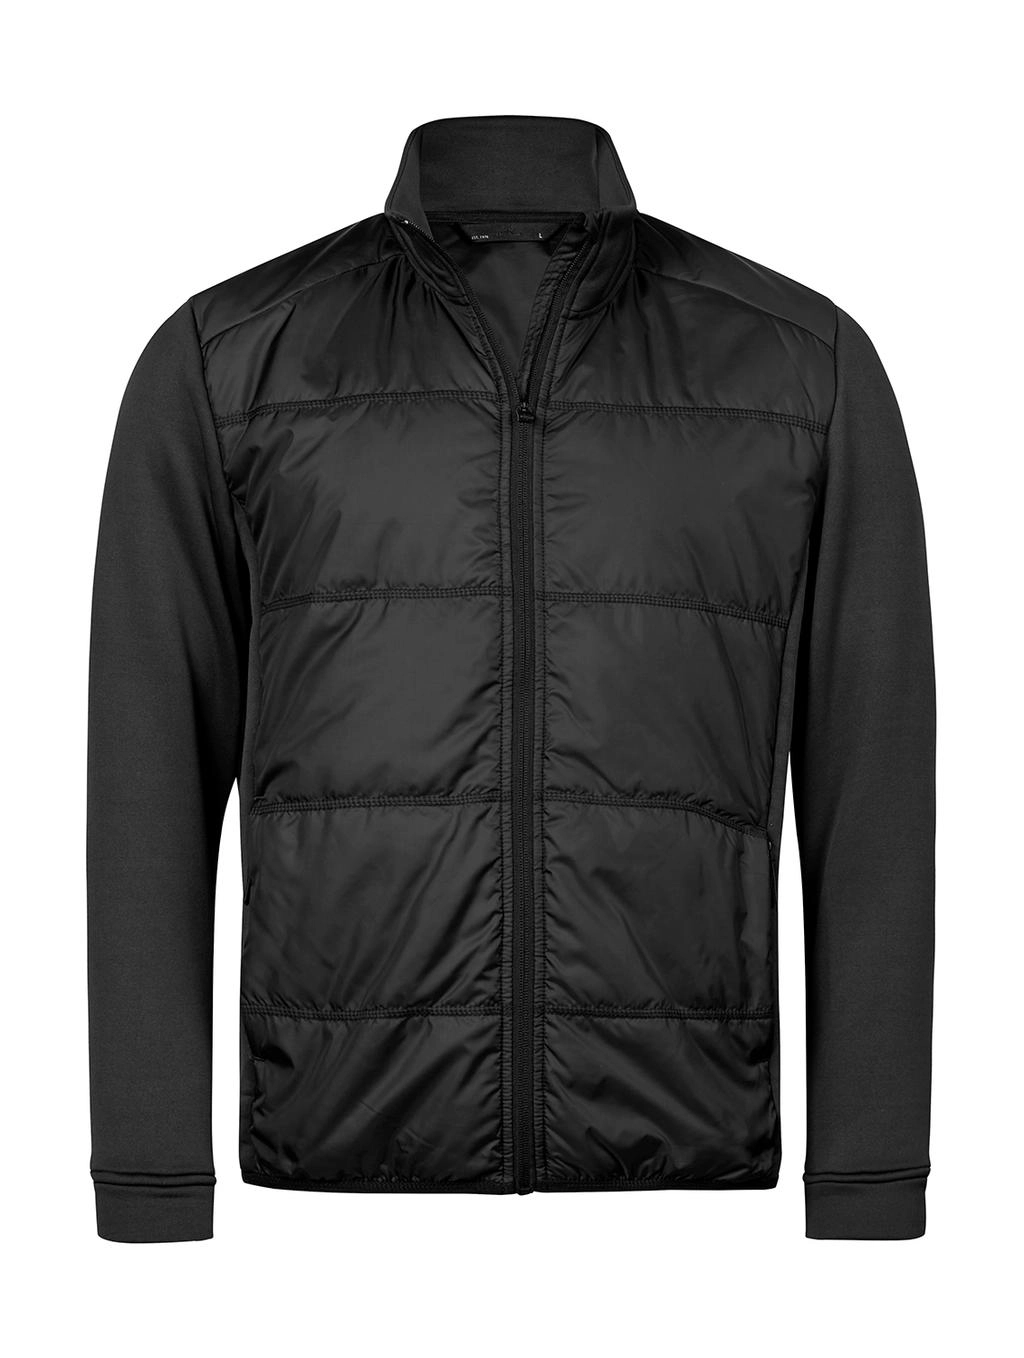 Hybrid-Stretch Jacket zum Besticken und Bedrucken in der Farbe Black/Black mit Ihren Logo, Schriftzug oder Motiv.